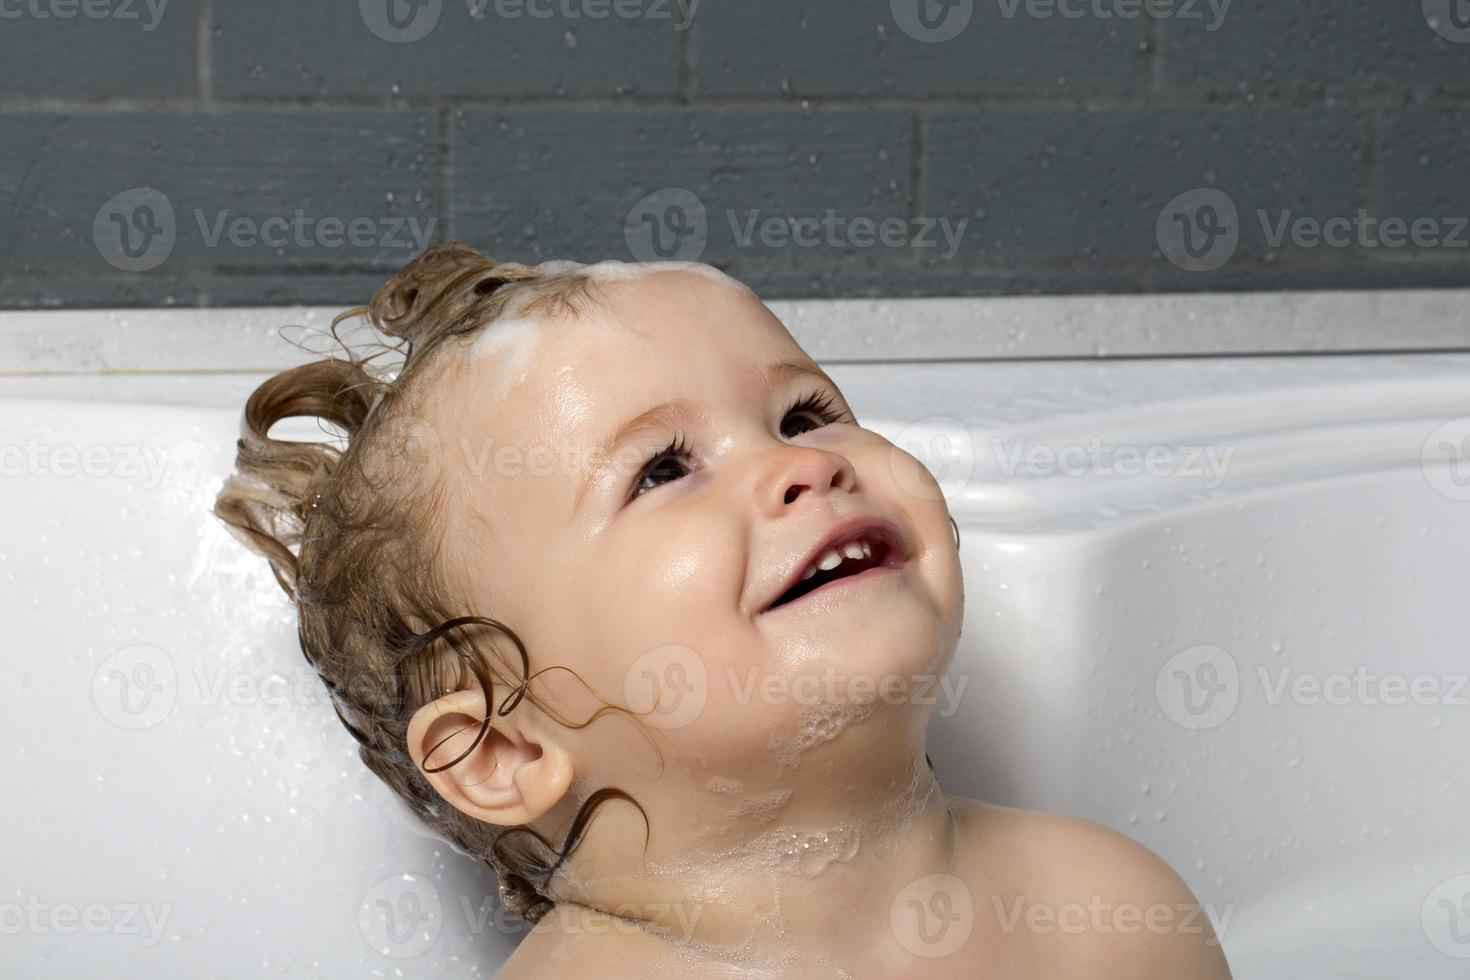 menino feliz no banho foto